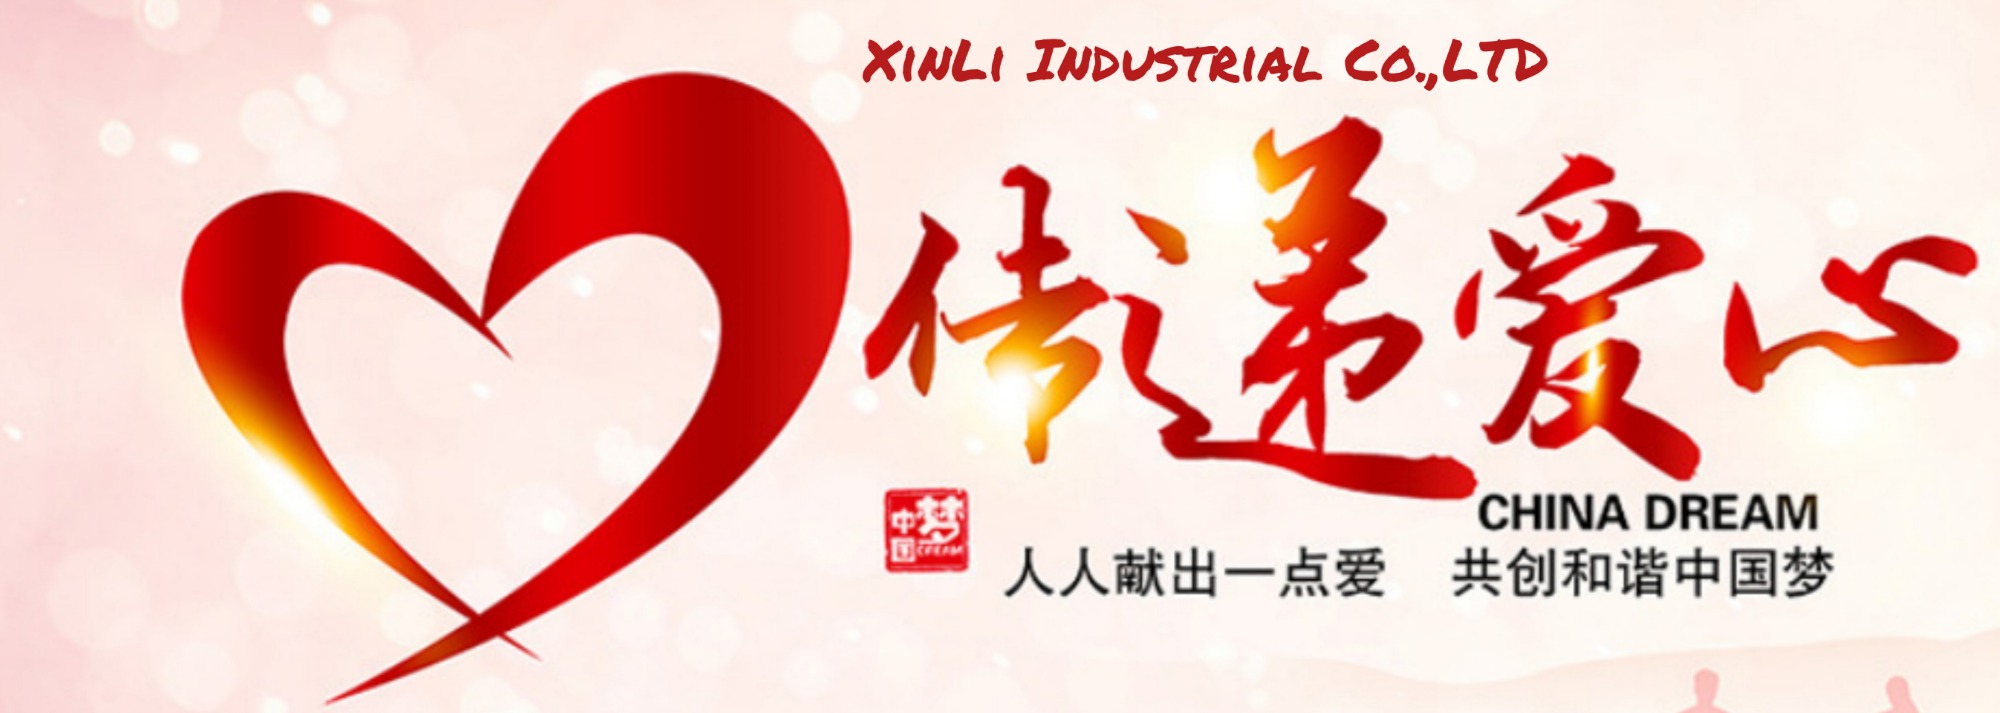 Aide de charité XinLi